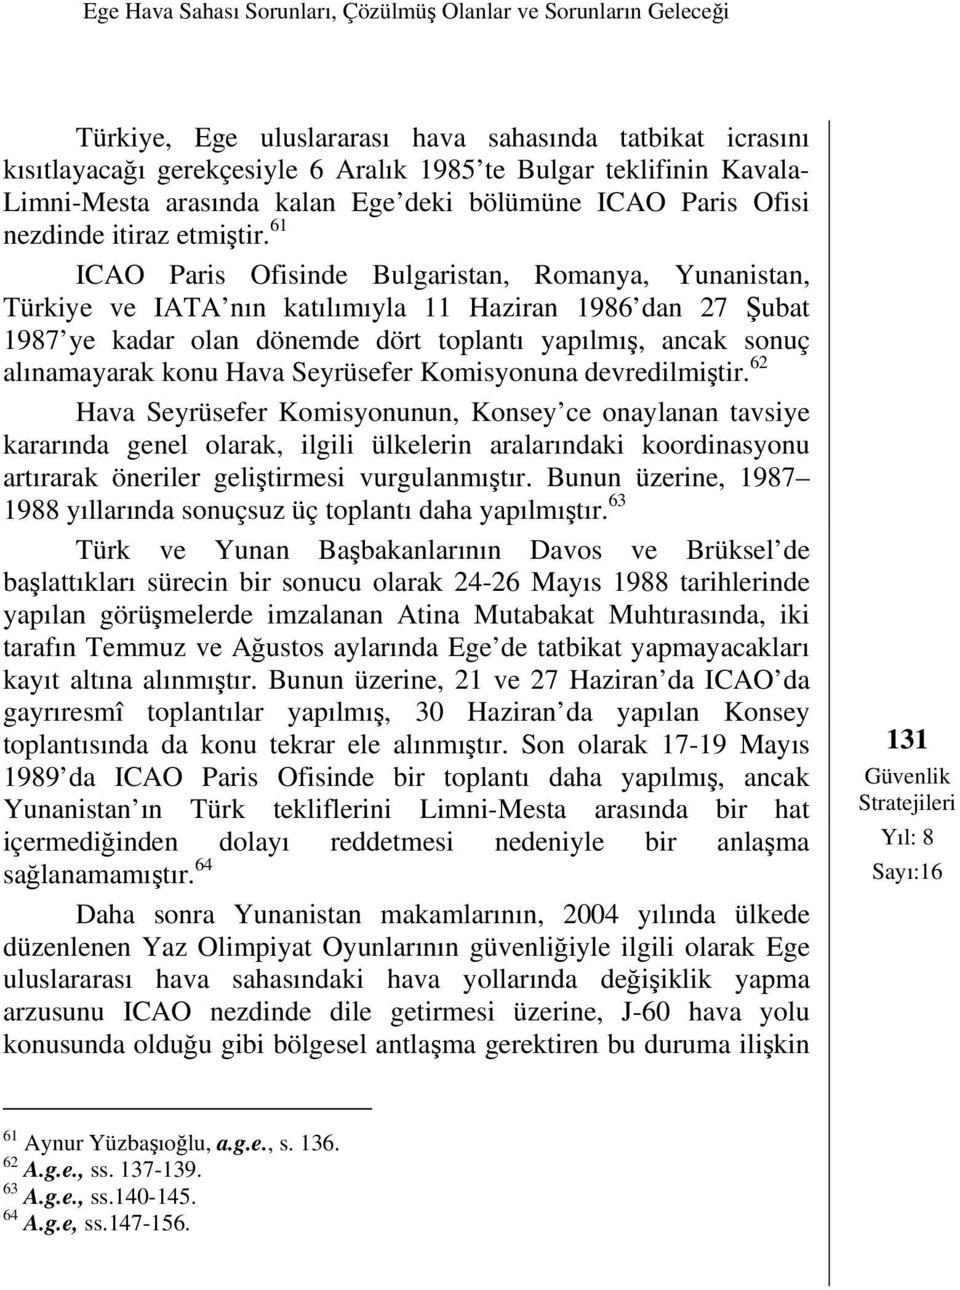 61 ICAO Paris Ofisinde Bulgaristan, Romanya, Yunanistan, Türkiye ve IATA nın katılımıyla 11 Haziran 1986 dan 27 Şubat 1987 ye kadar olan dönemde dört toplantı yapılmış, ancak sonuç alınamayarak konu